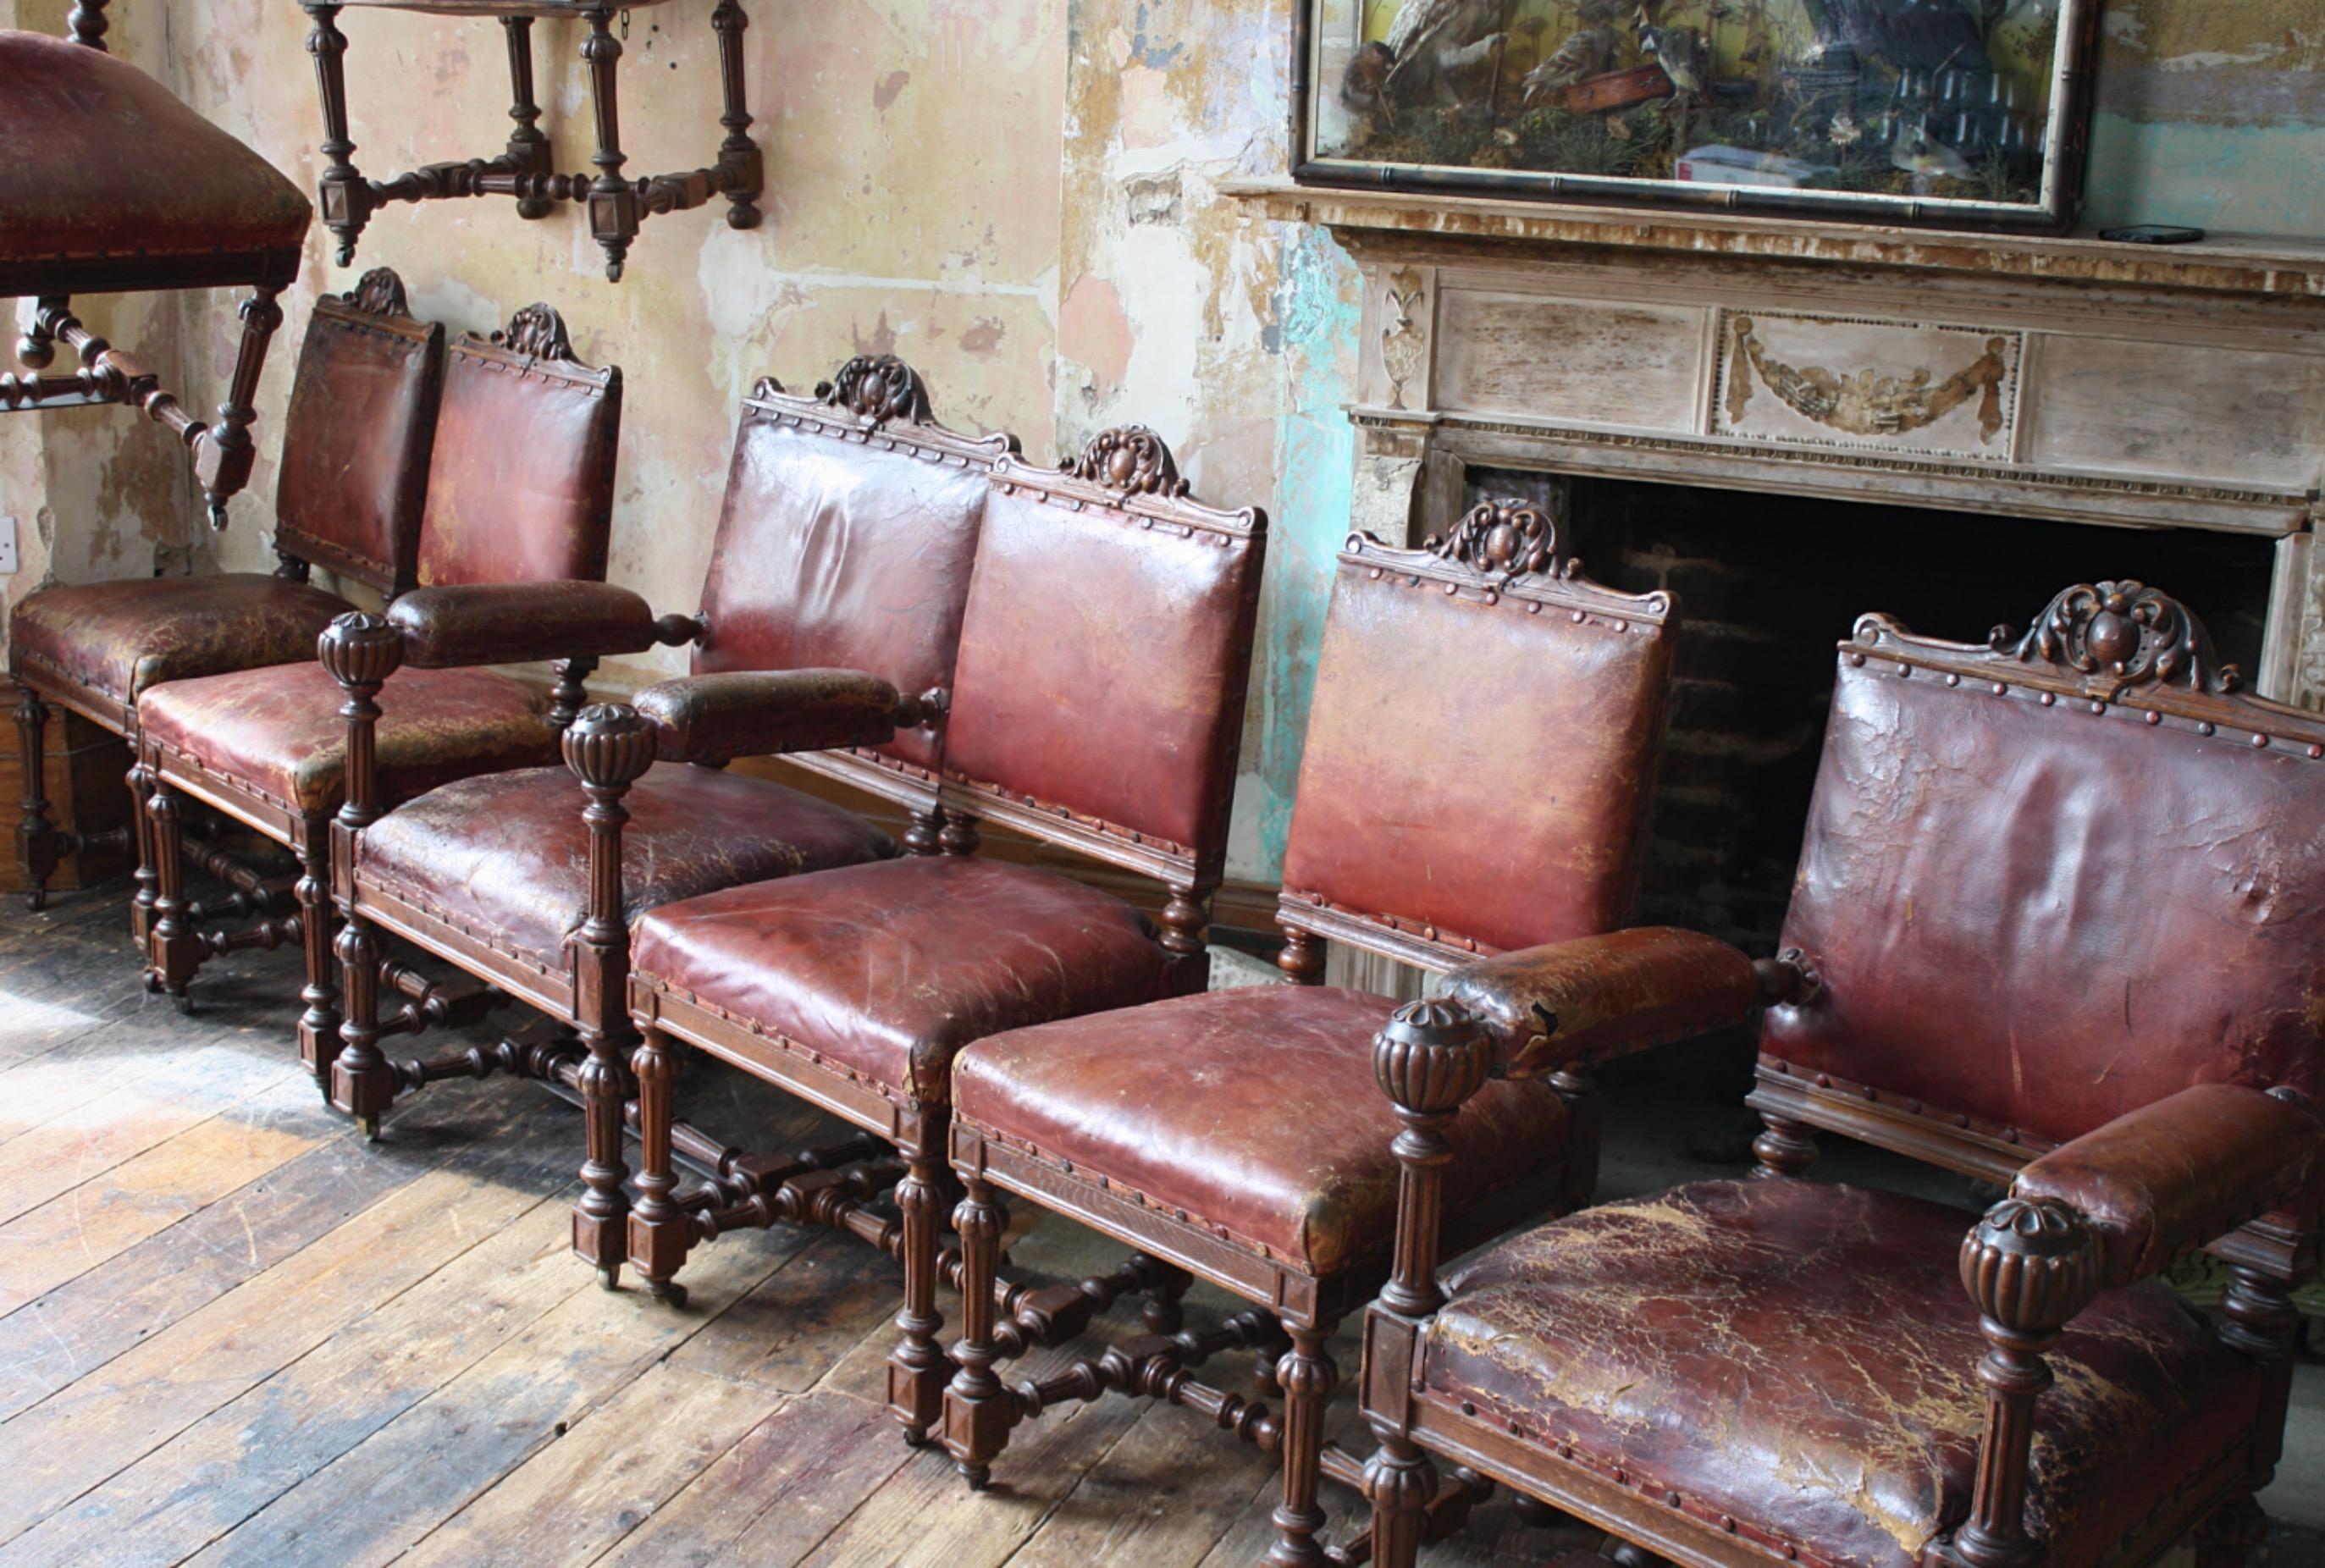 Acht viktorianische Esszimmerstühle aus rotem schottischem Leder und Eiche aus dem späten 19. Jahrhundert  (Spätviktorianisch)